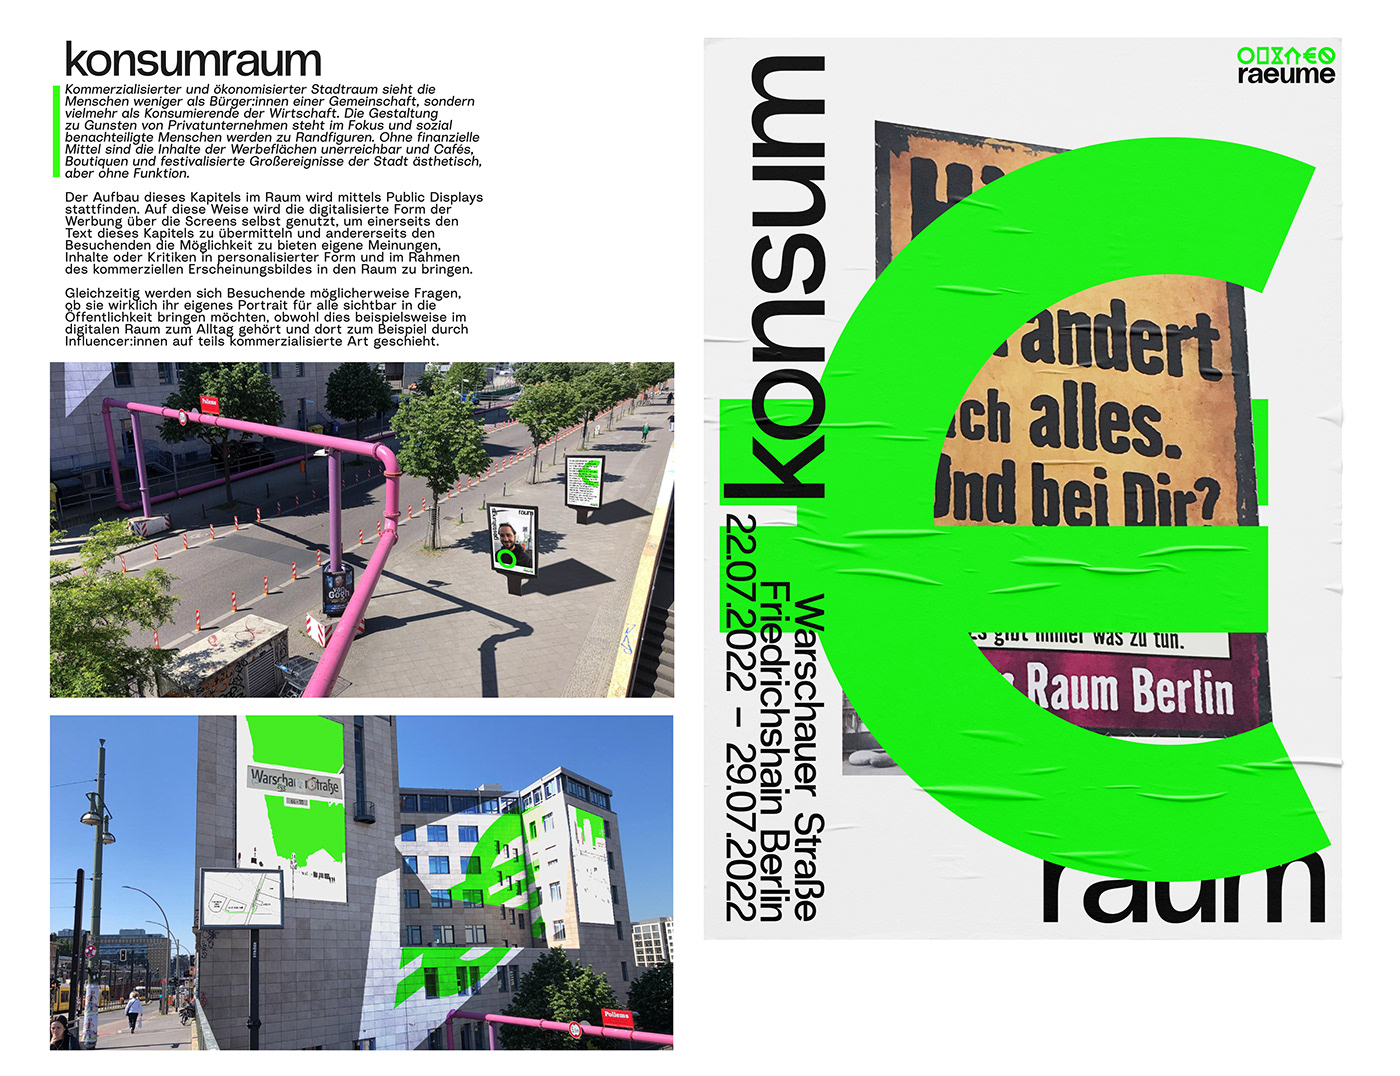 Ausstellungsdesign bachelor berlin city Corporate Design Exhibition  Öffentlicher Raum public space Street warschauer strasse